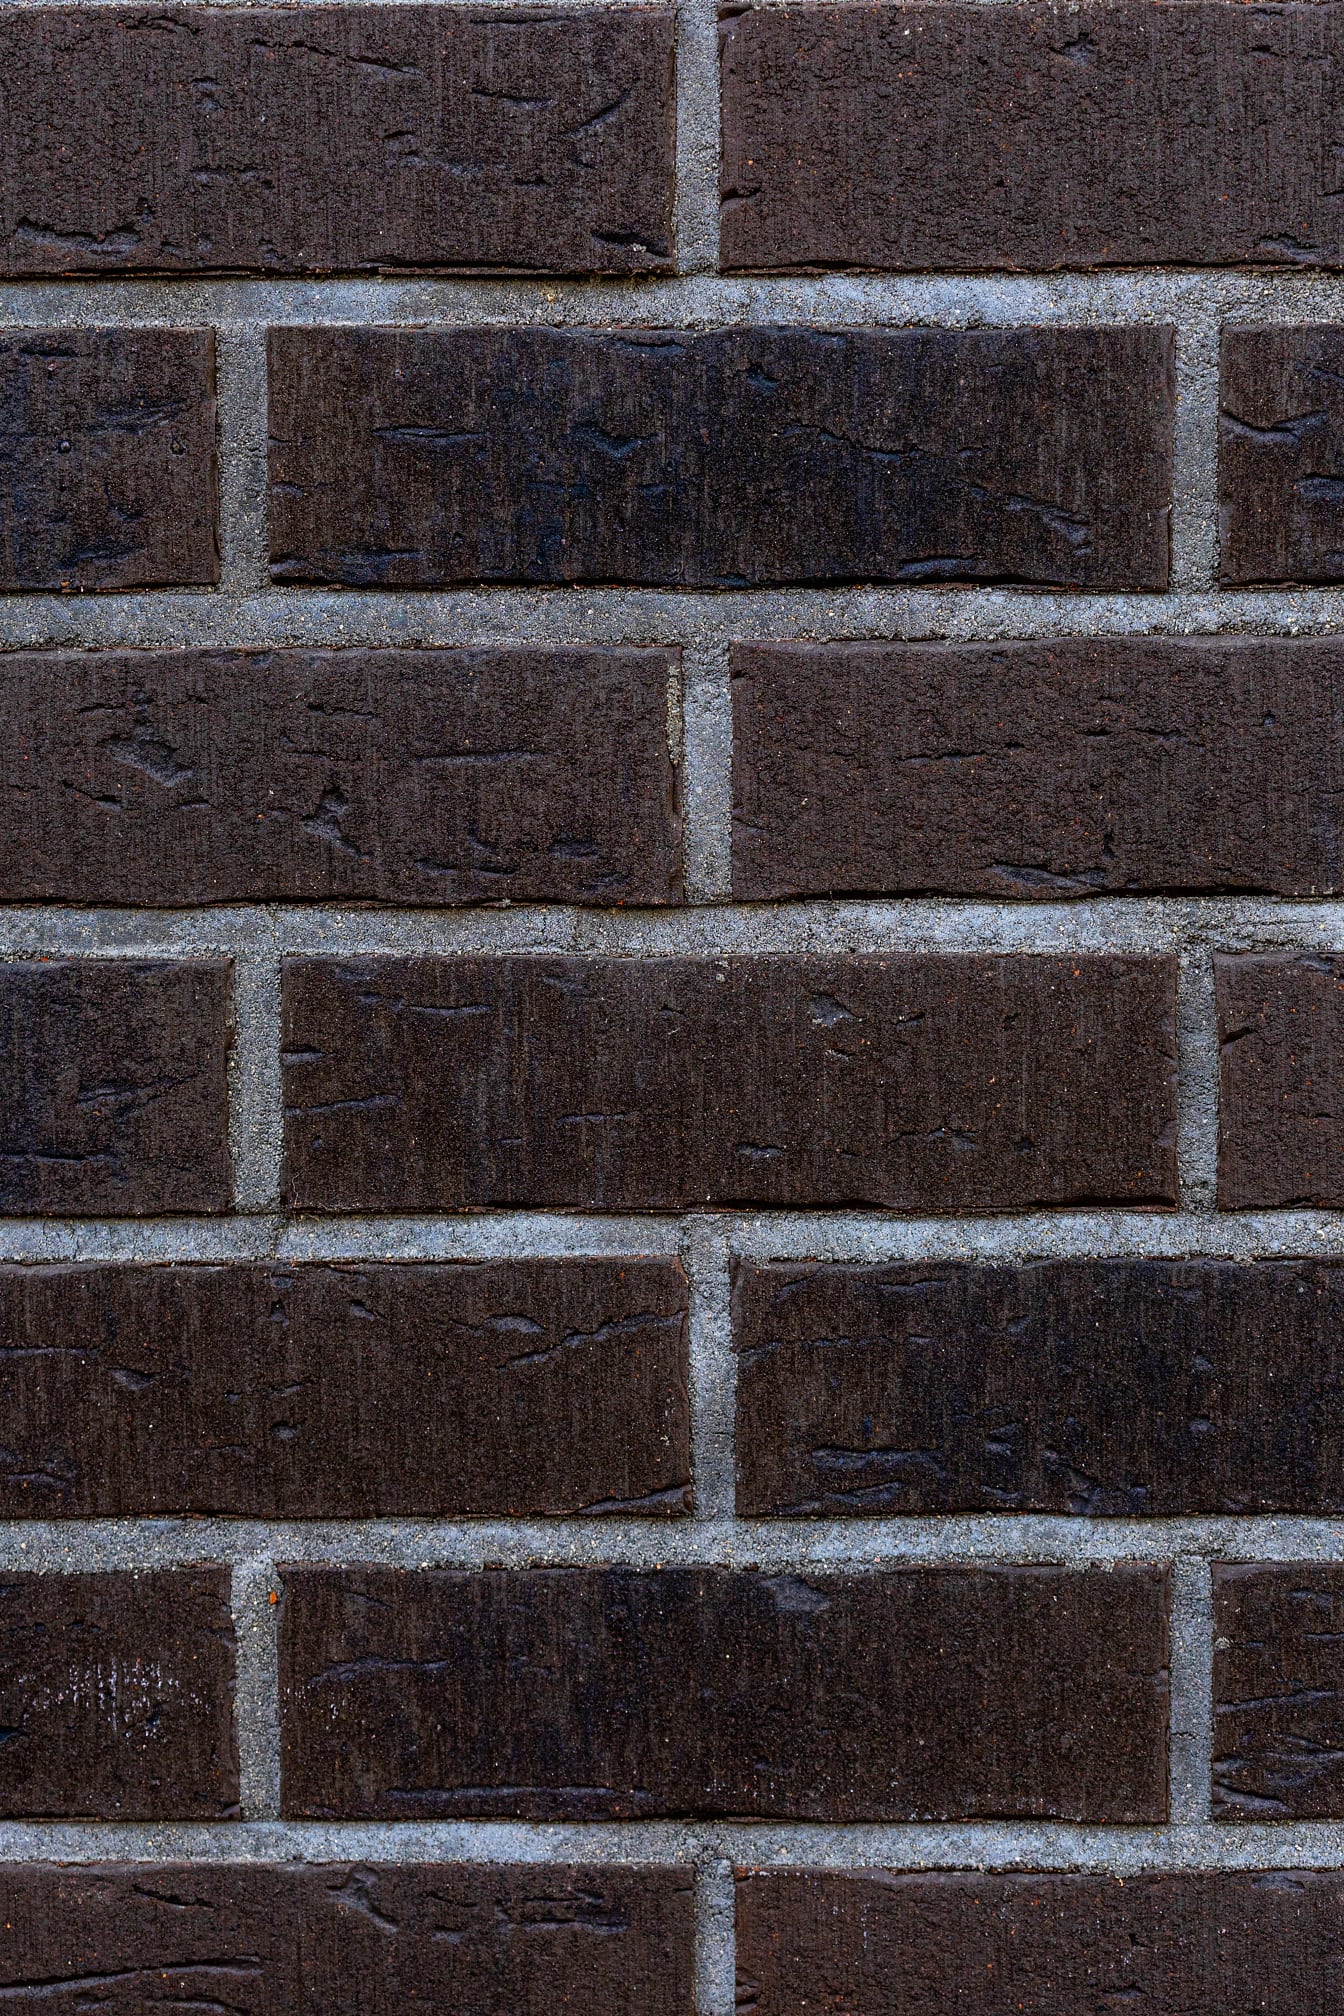 Brick wall with dark brown bricks and grey mortar